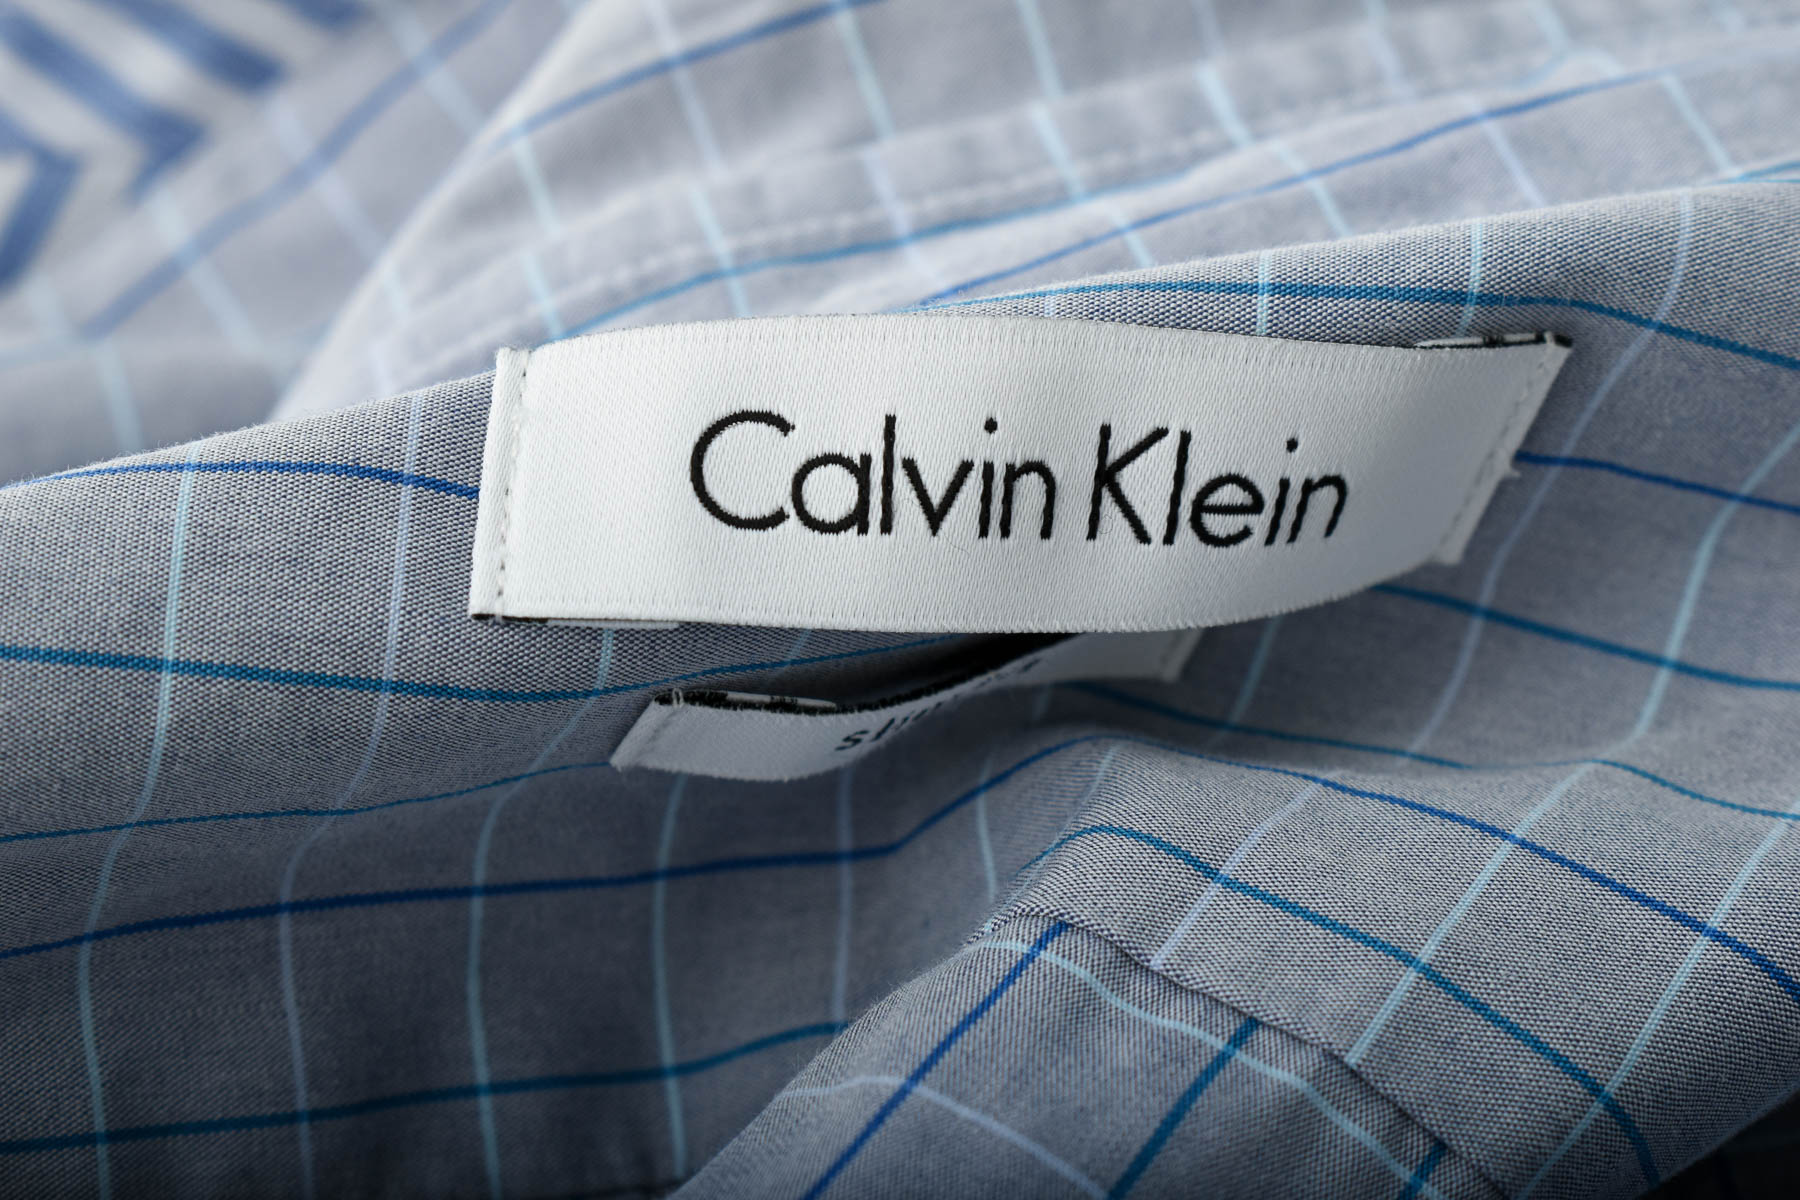 Men's shirt - Calvin Klein - 2